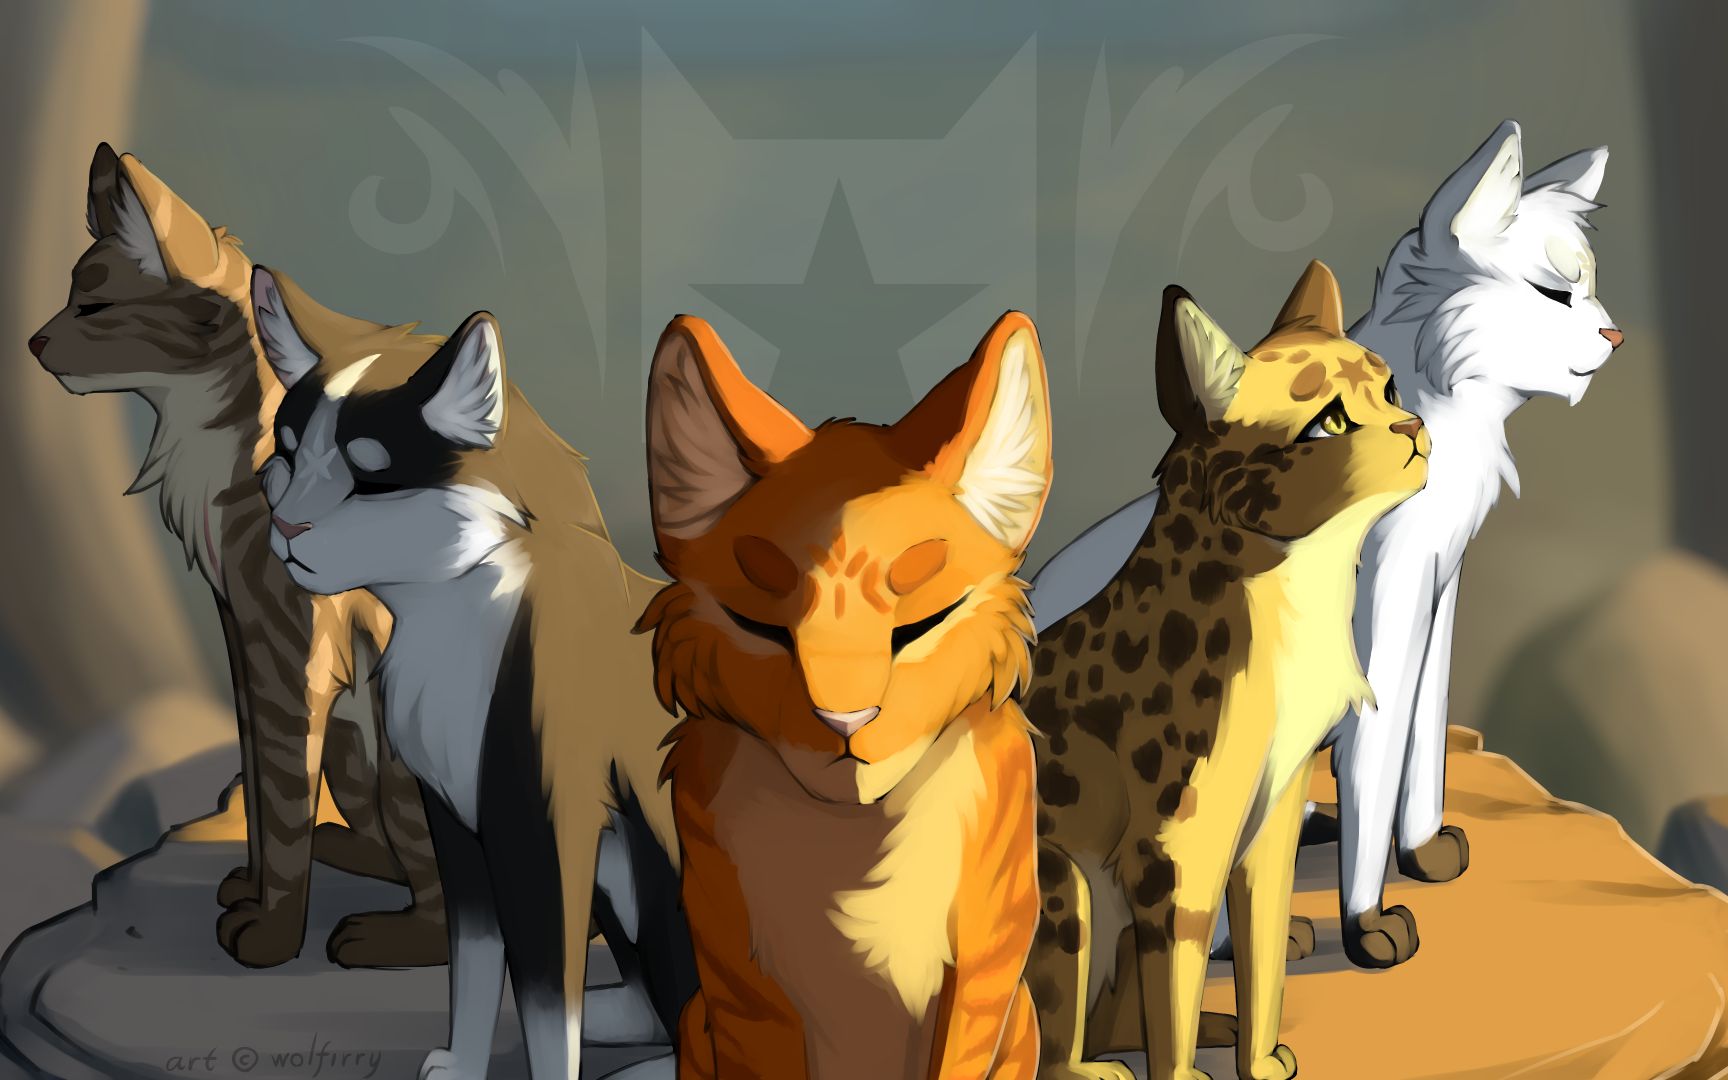 猫武士动画图片